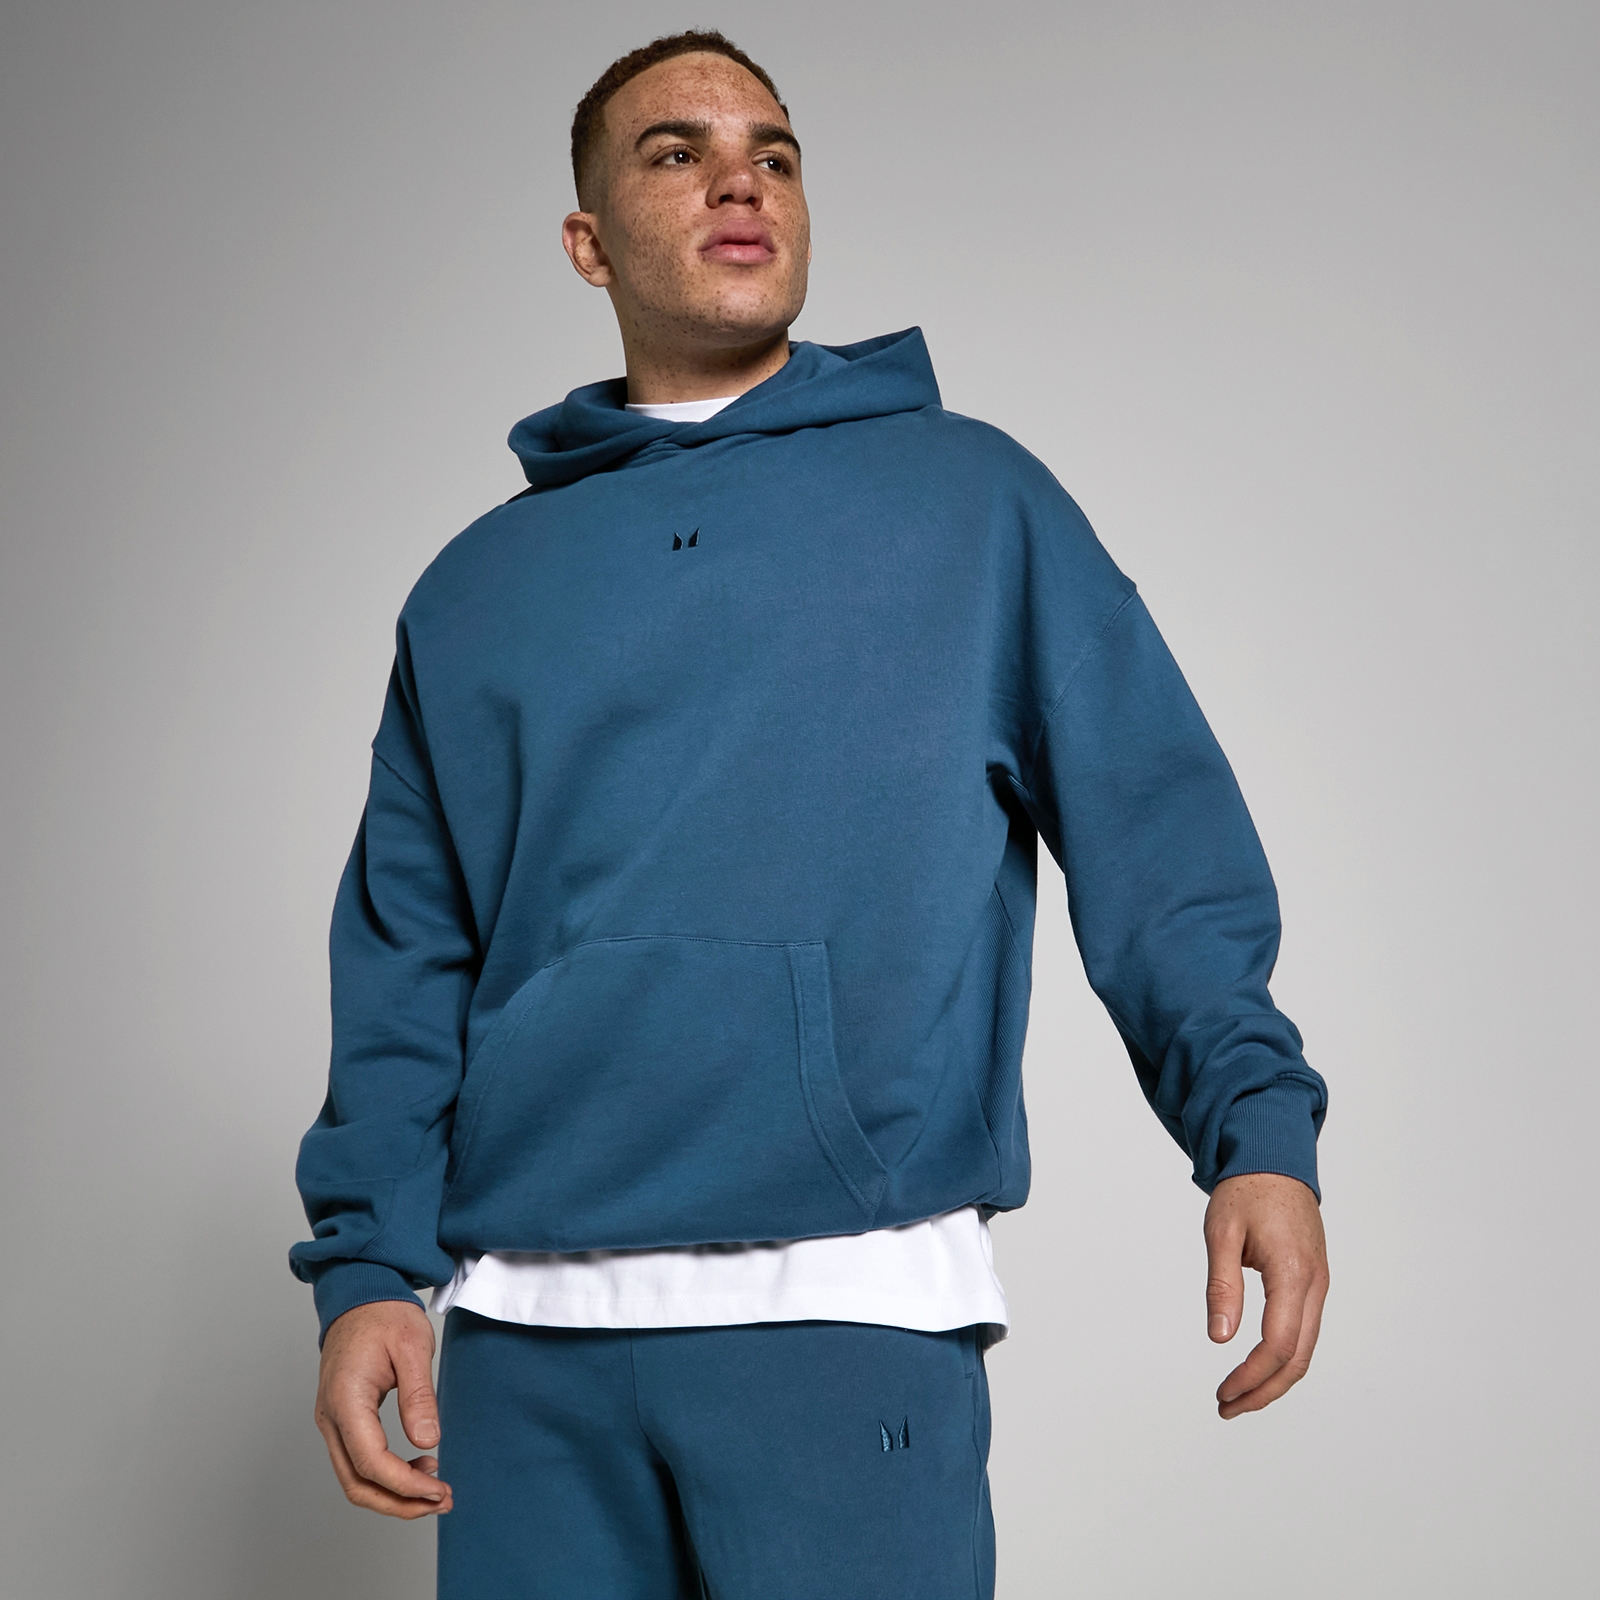 Camisola com capuz com efeito lavado Tempo da MP para Homem - Azul-marinho lavado - XS